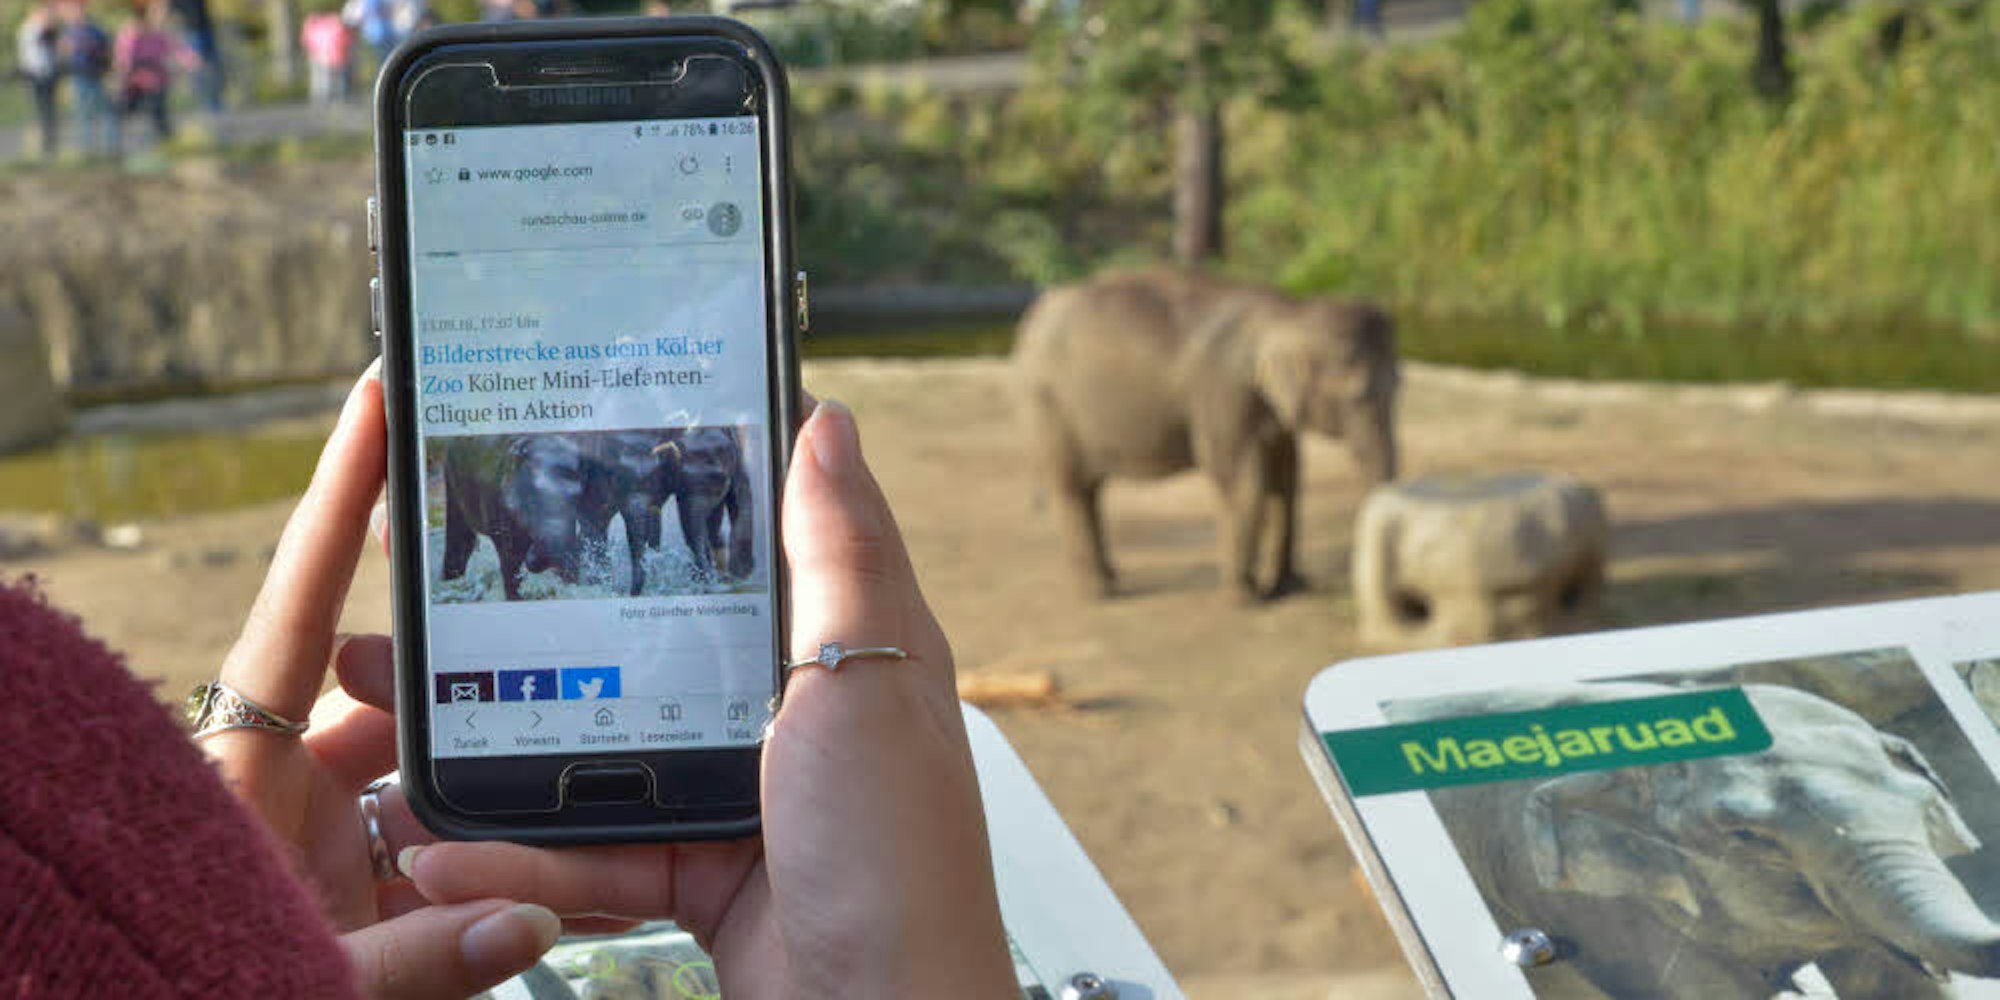 Zoo-Besucher können sich ins kostenlose Wlan einloggen und zum Beispiel Geschichten über die Elefanten nachlesen.